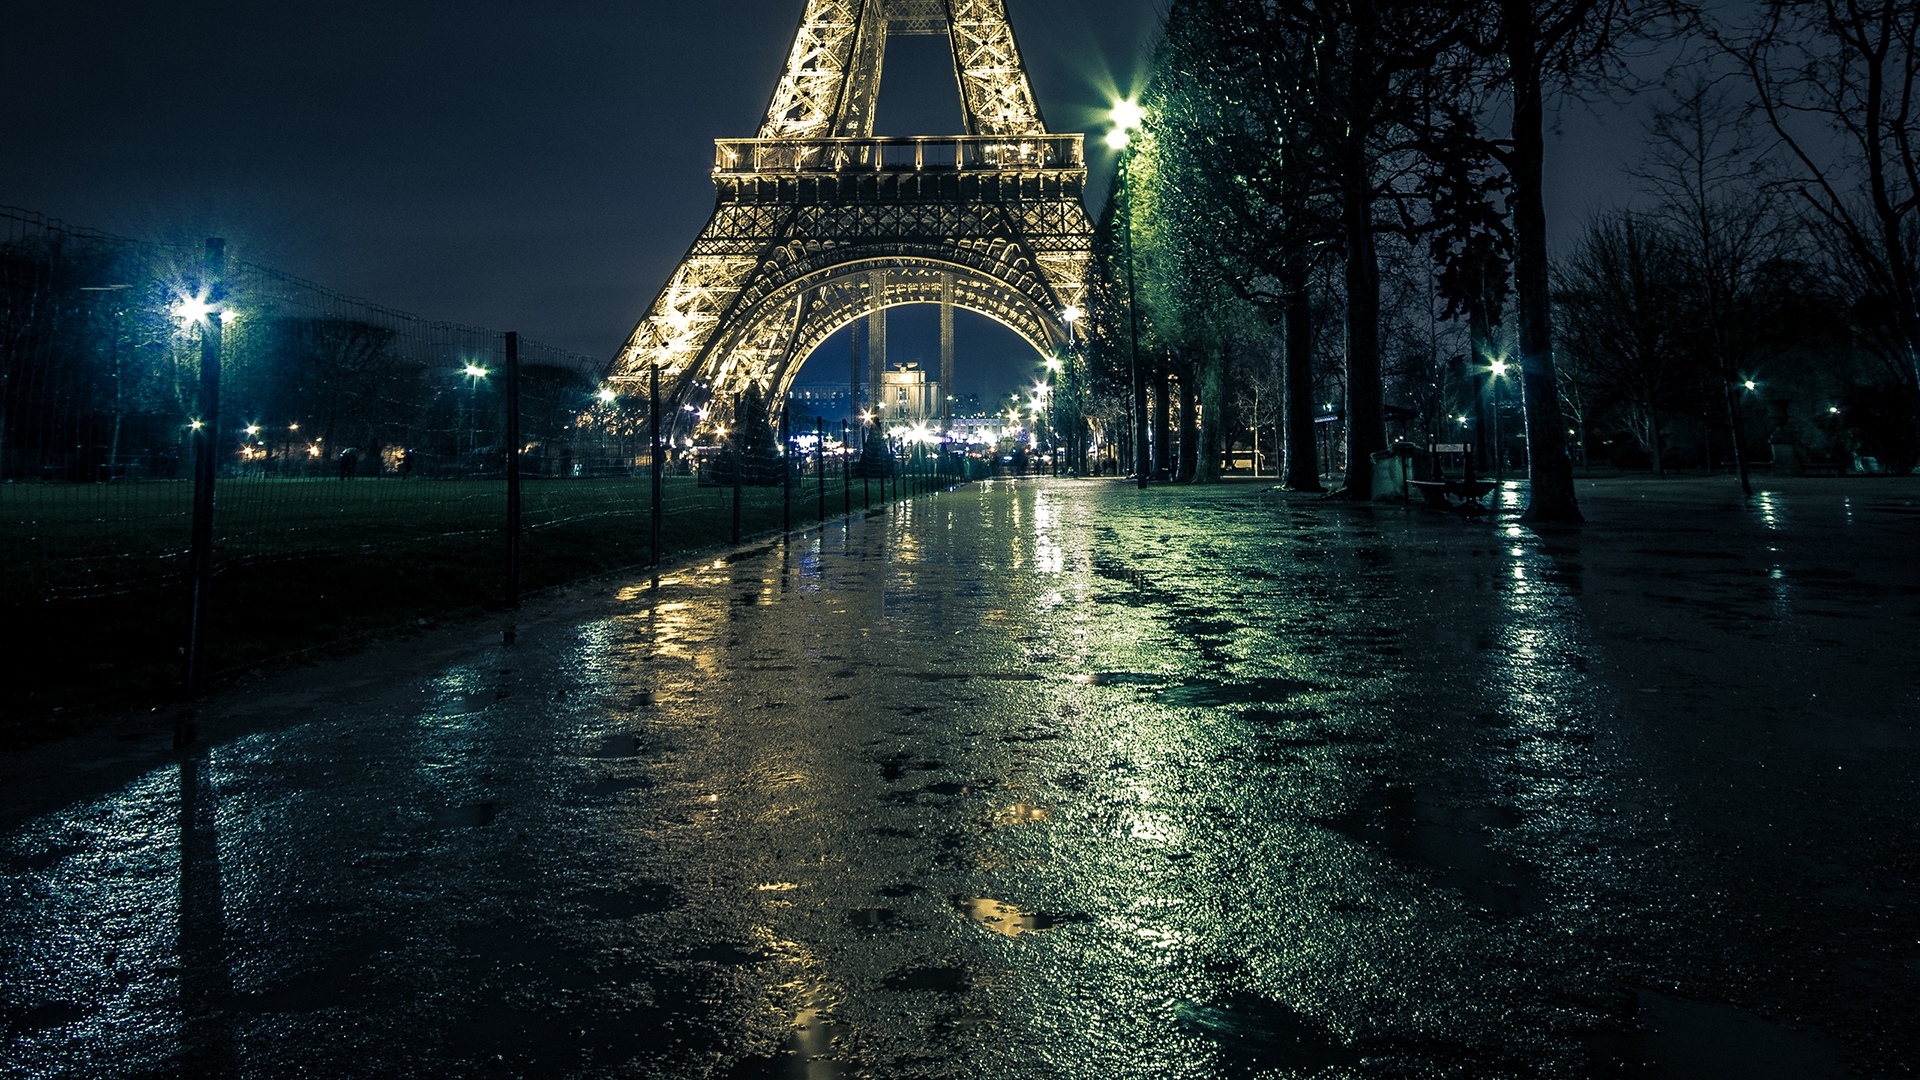 埃菲尔铁塔塔巴黎灯夜高清壁纸1280x960分辨率查看